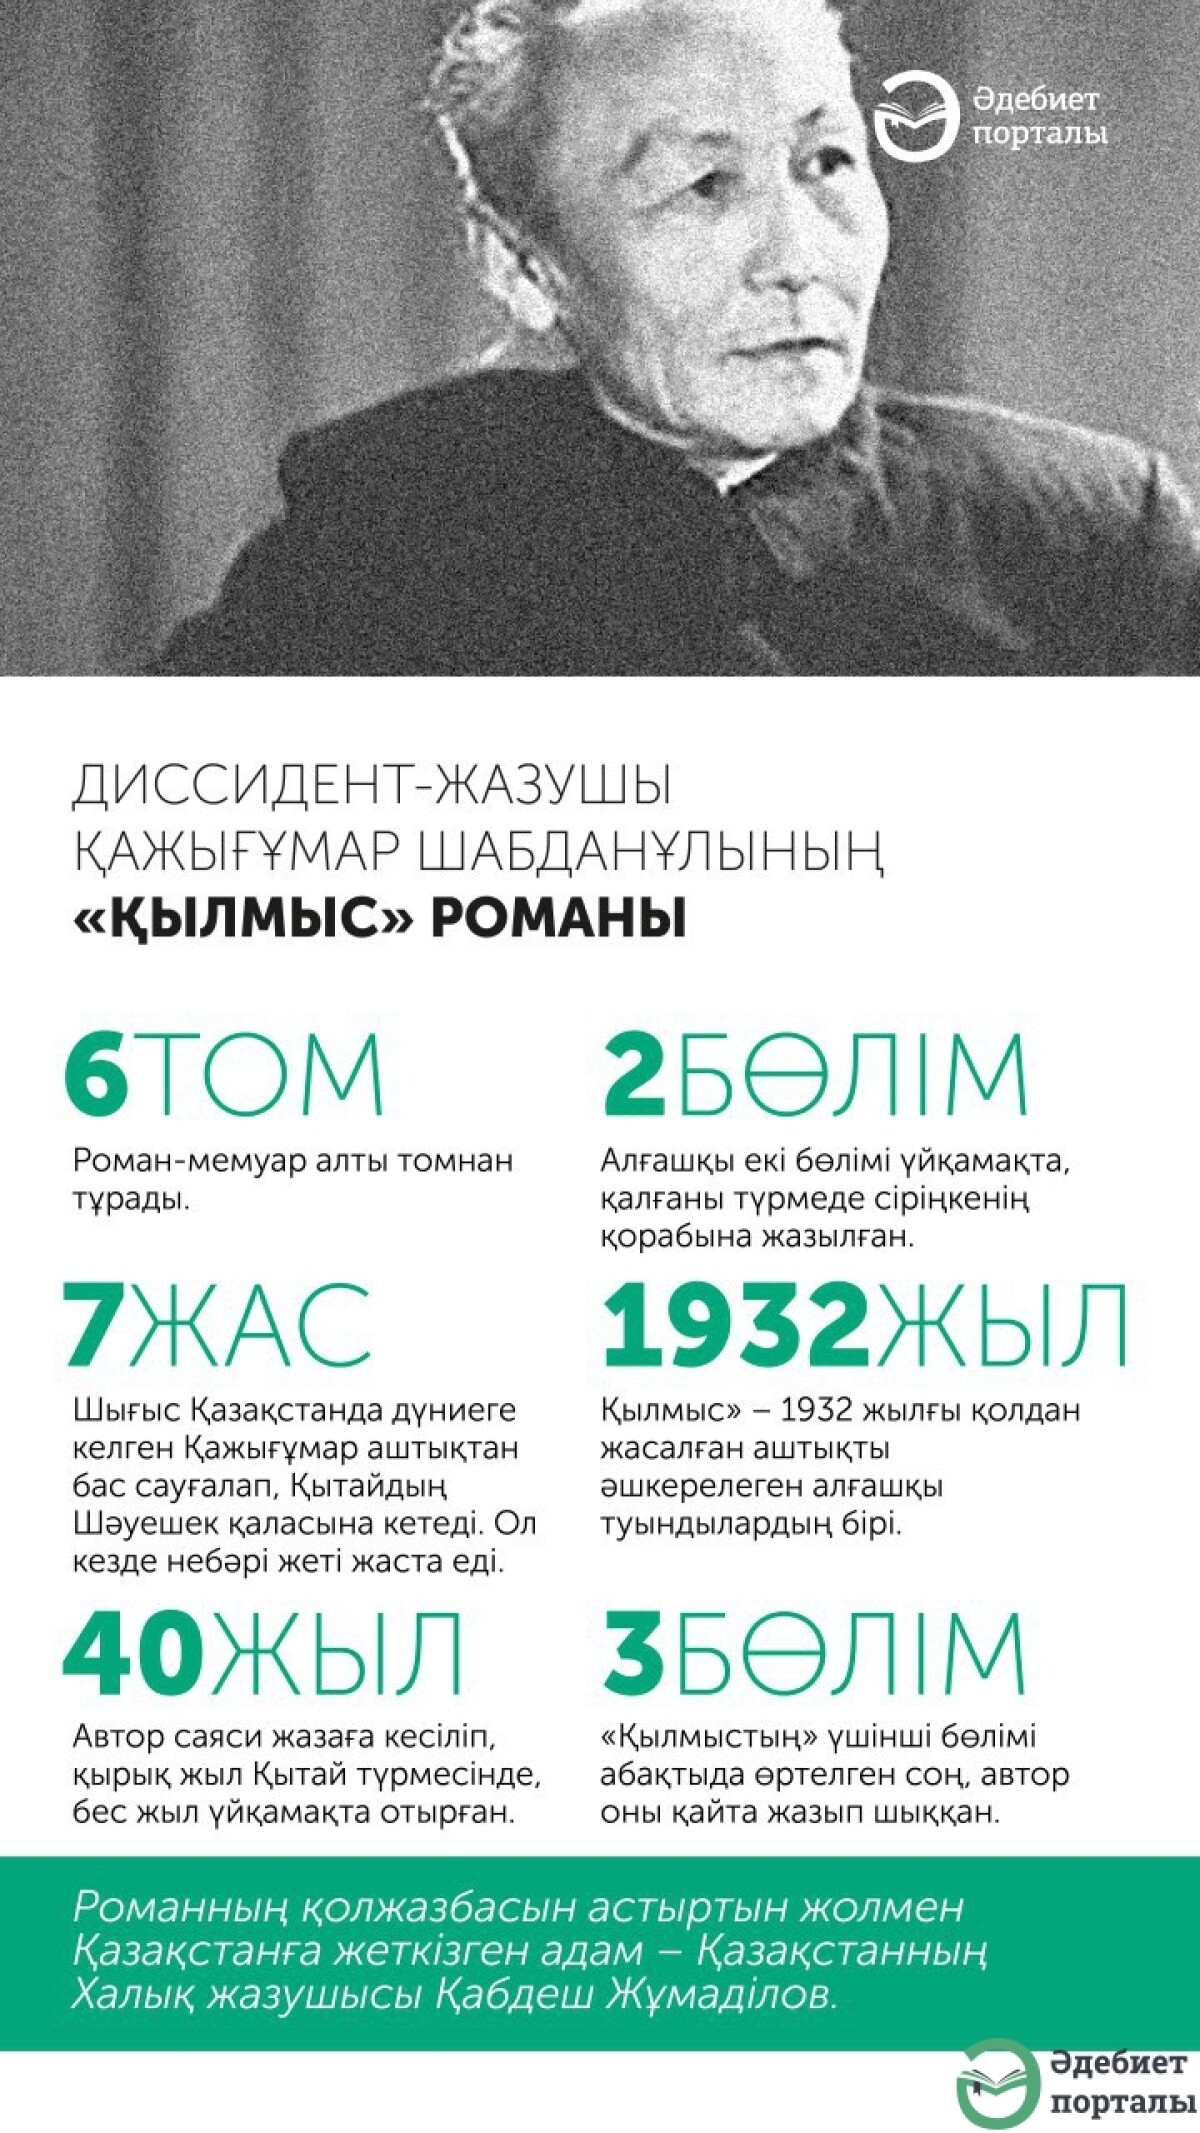 Инфографика - adebiportal.kz